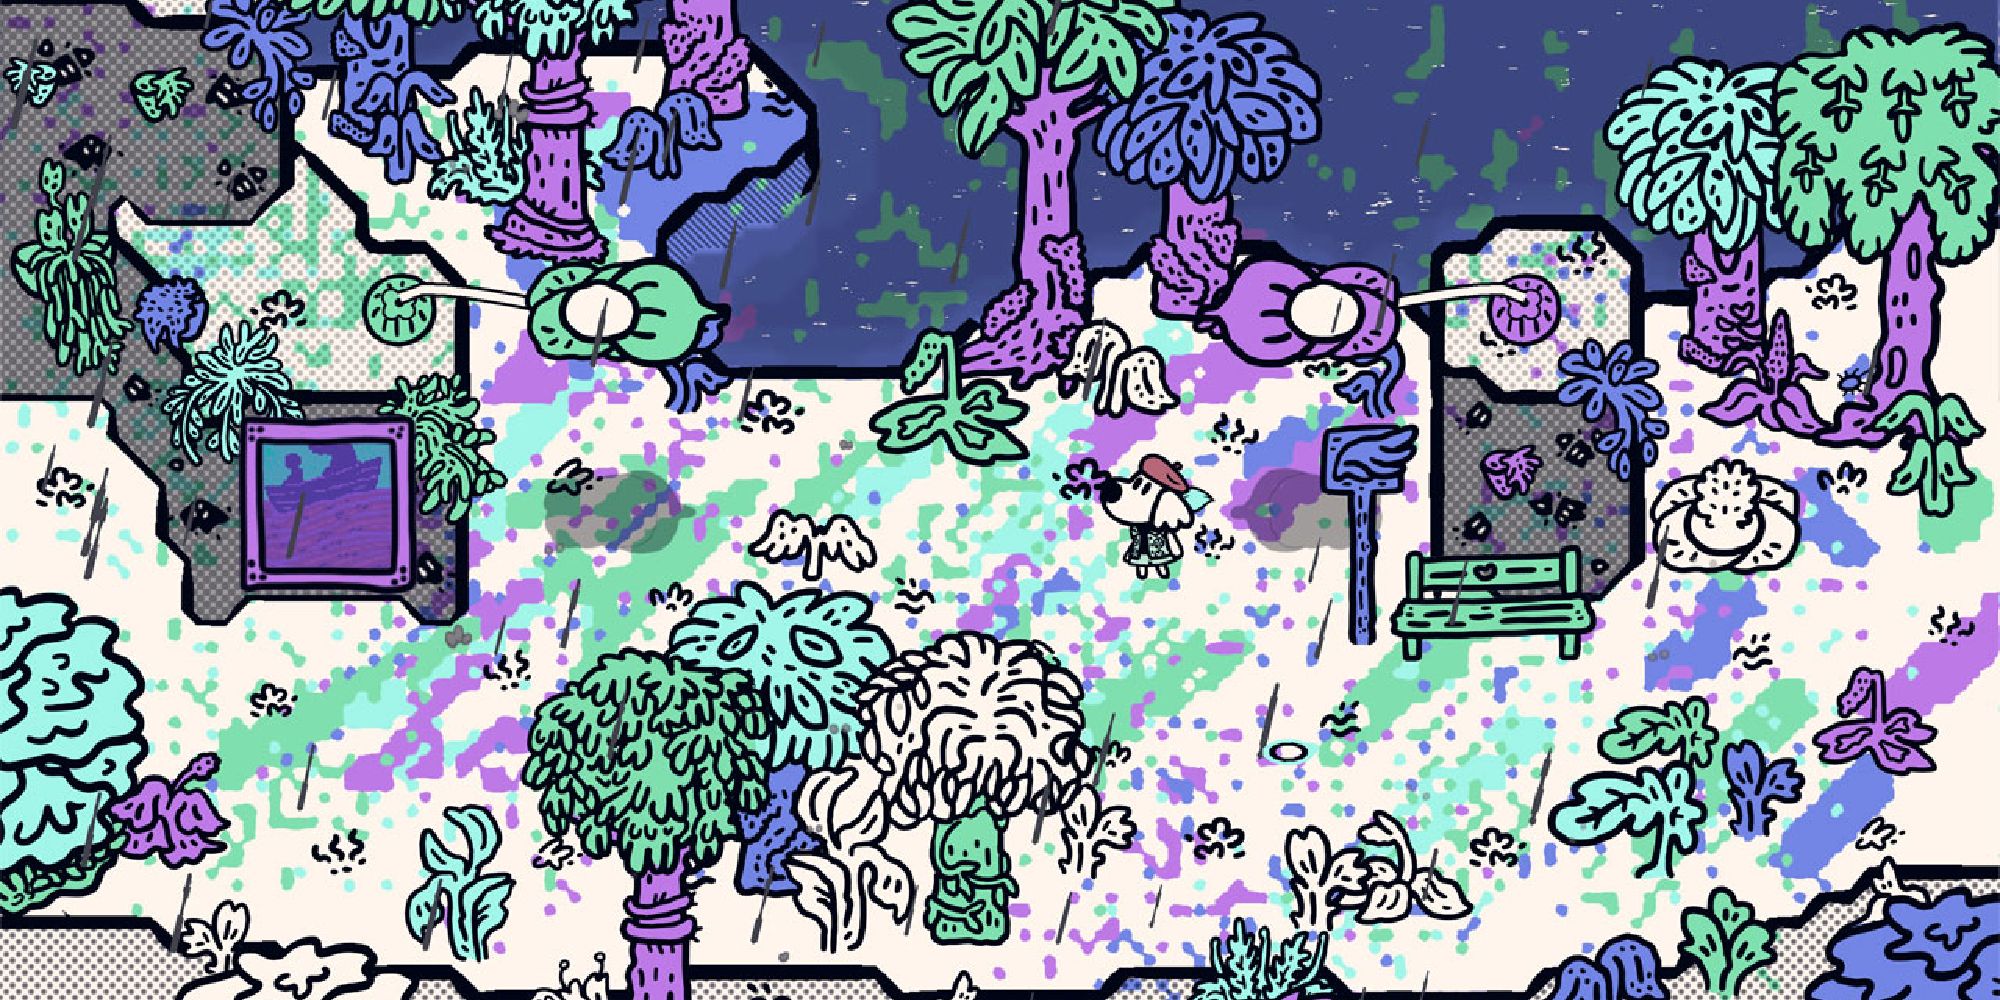 Capture d'écran du monde coloré de Chicory.